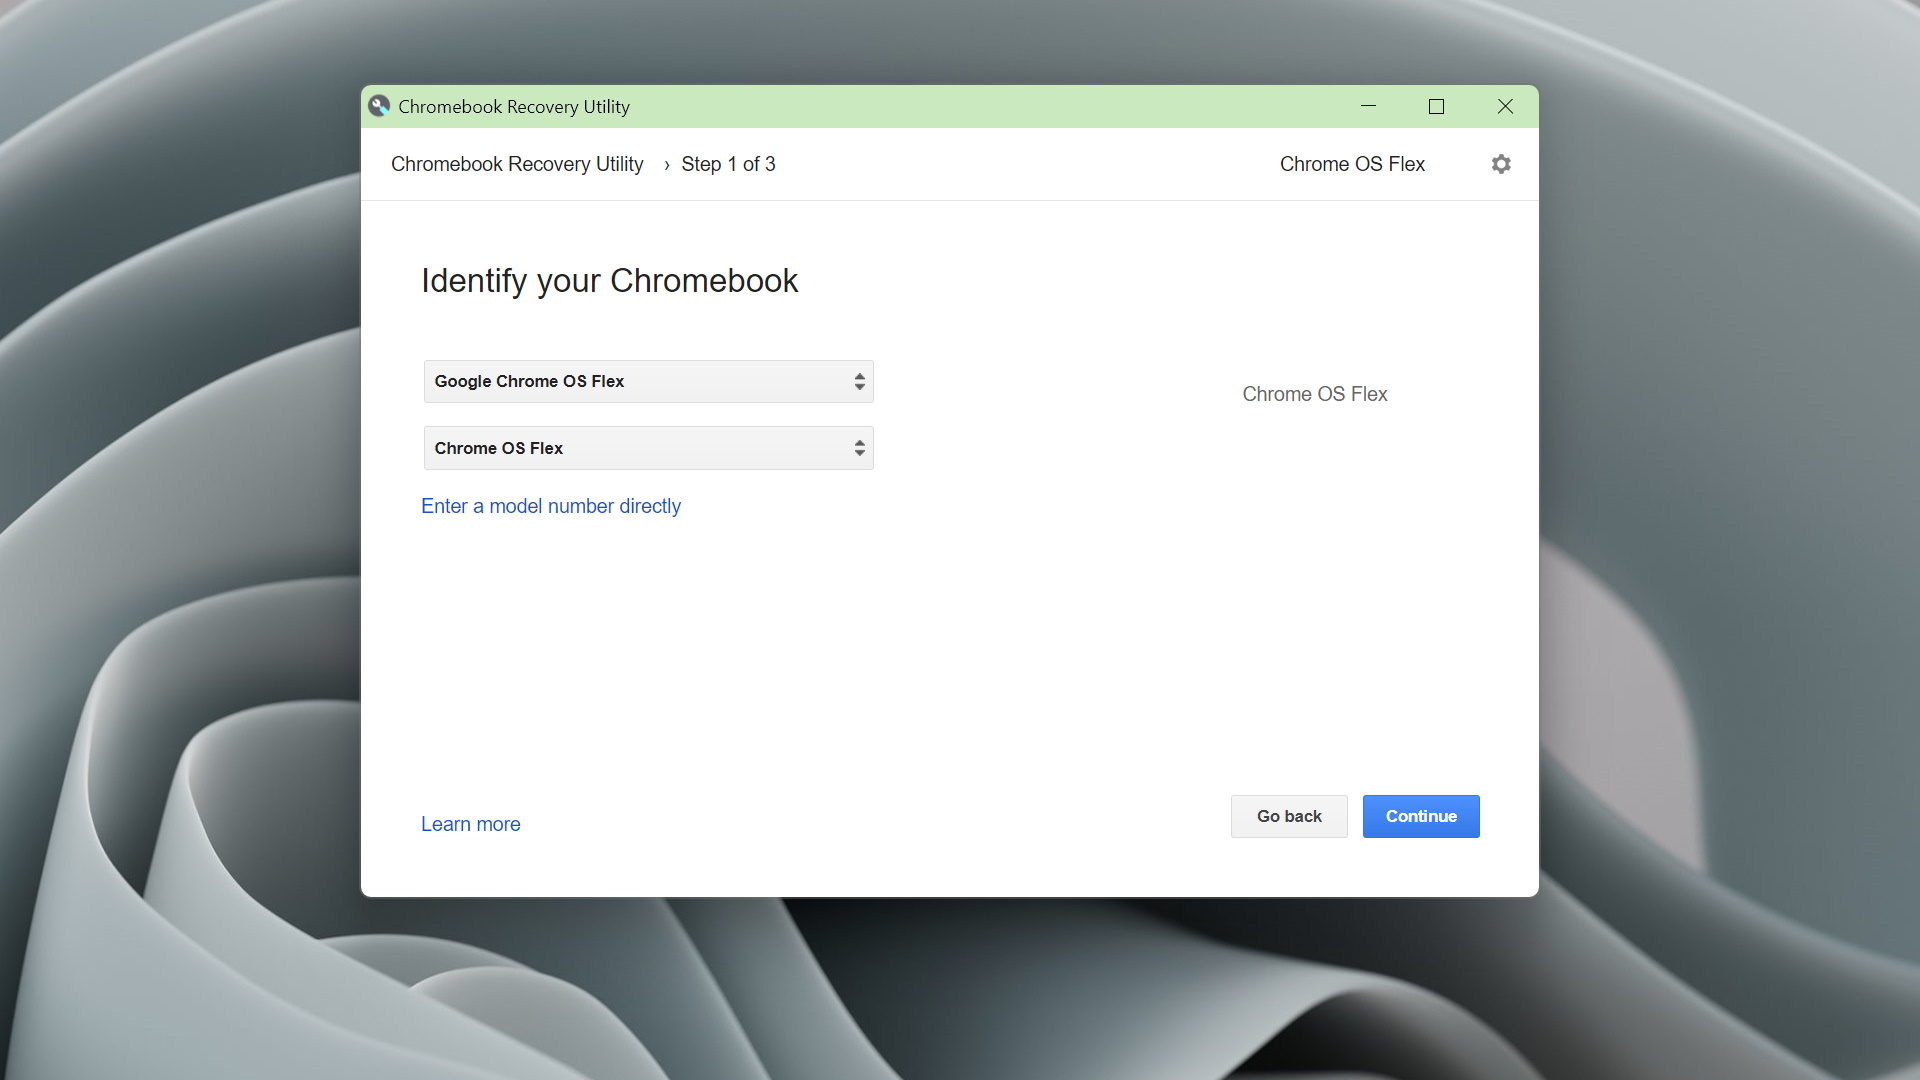 Google Chrome OS Flex running on an Acer Aspire V5